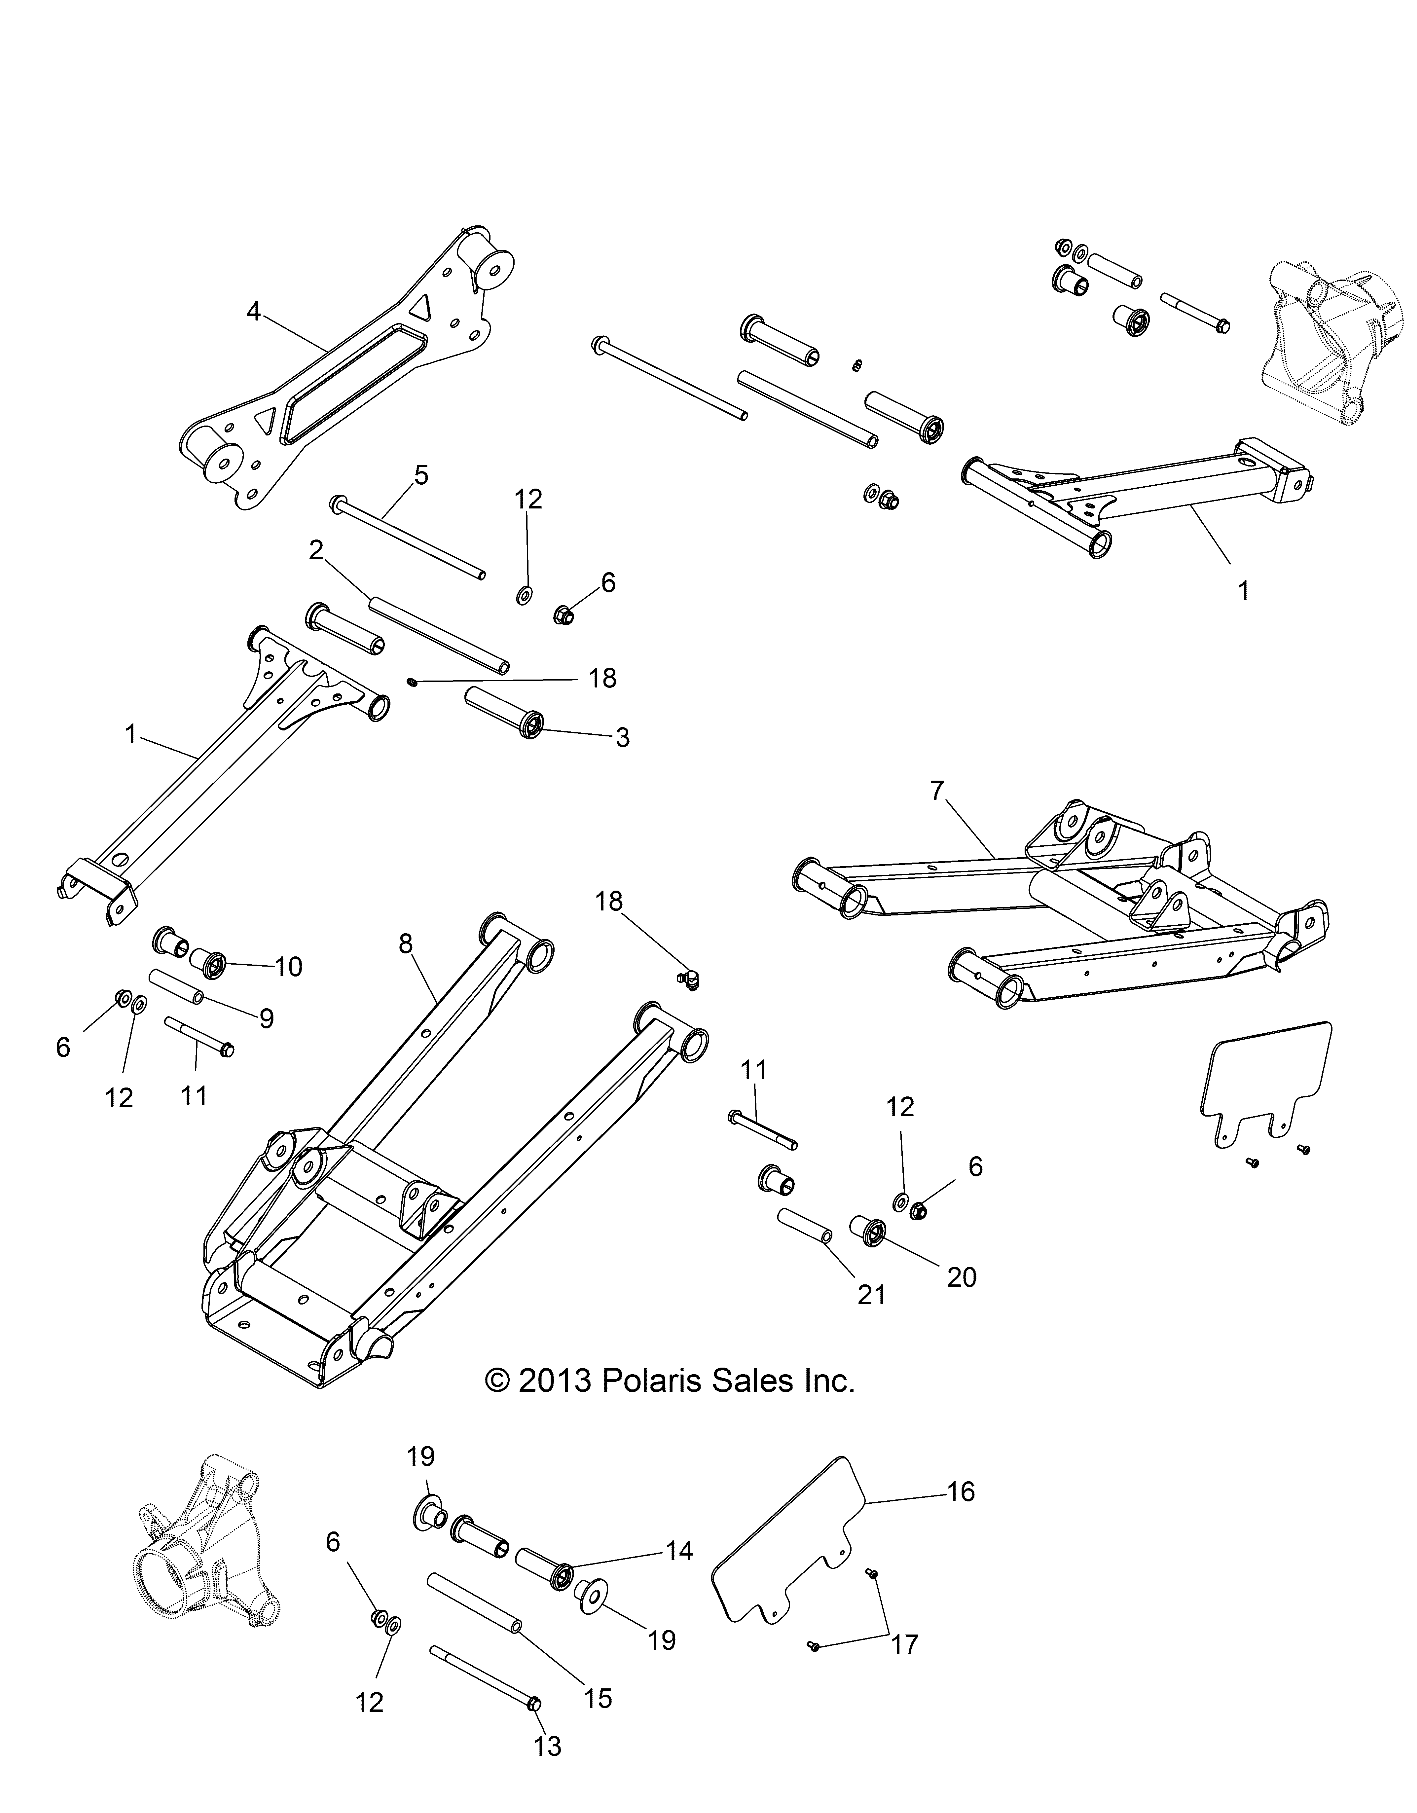 Foto diagrama Polaris que contem a peça 1016583-458